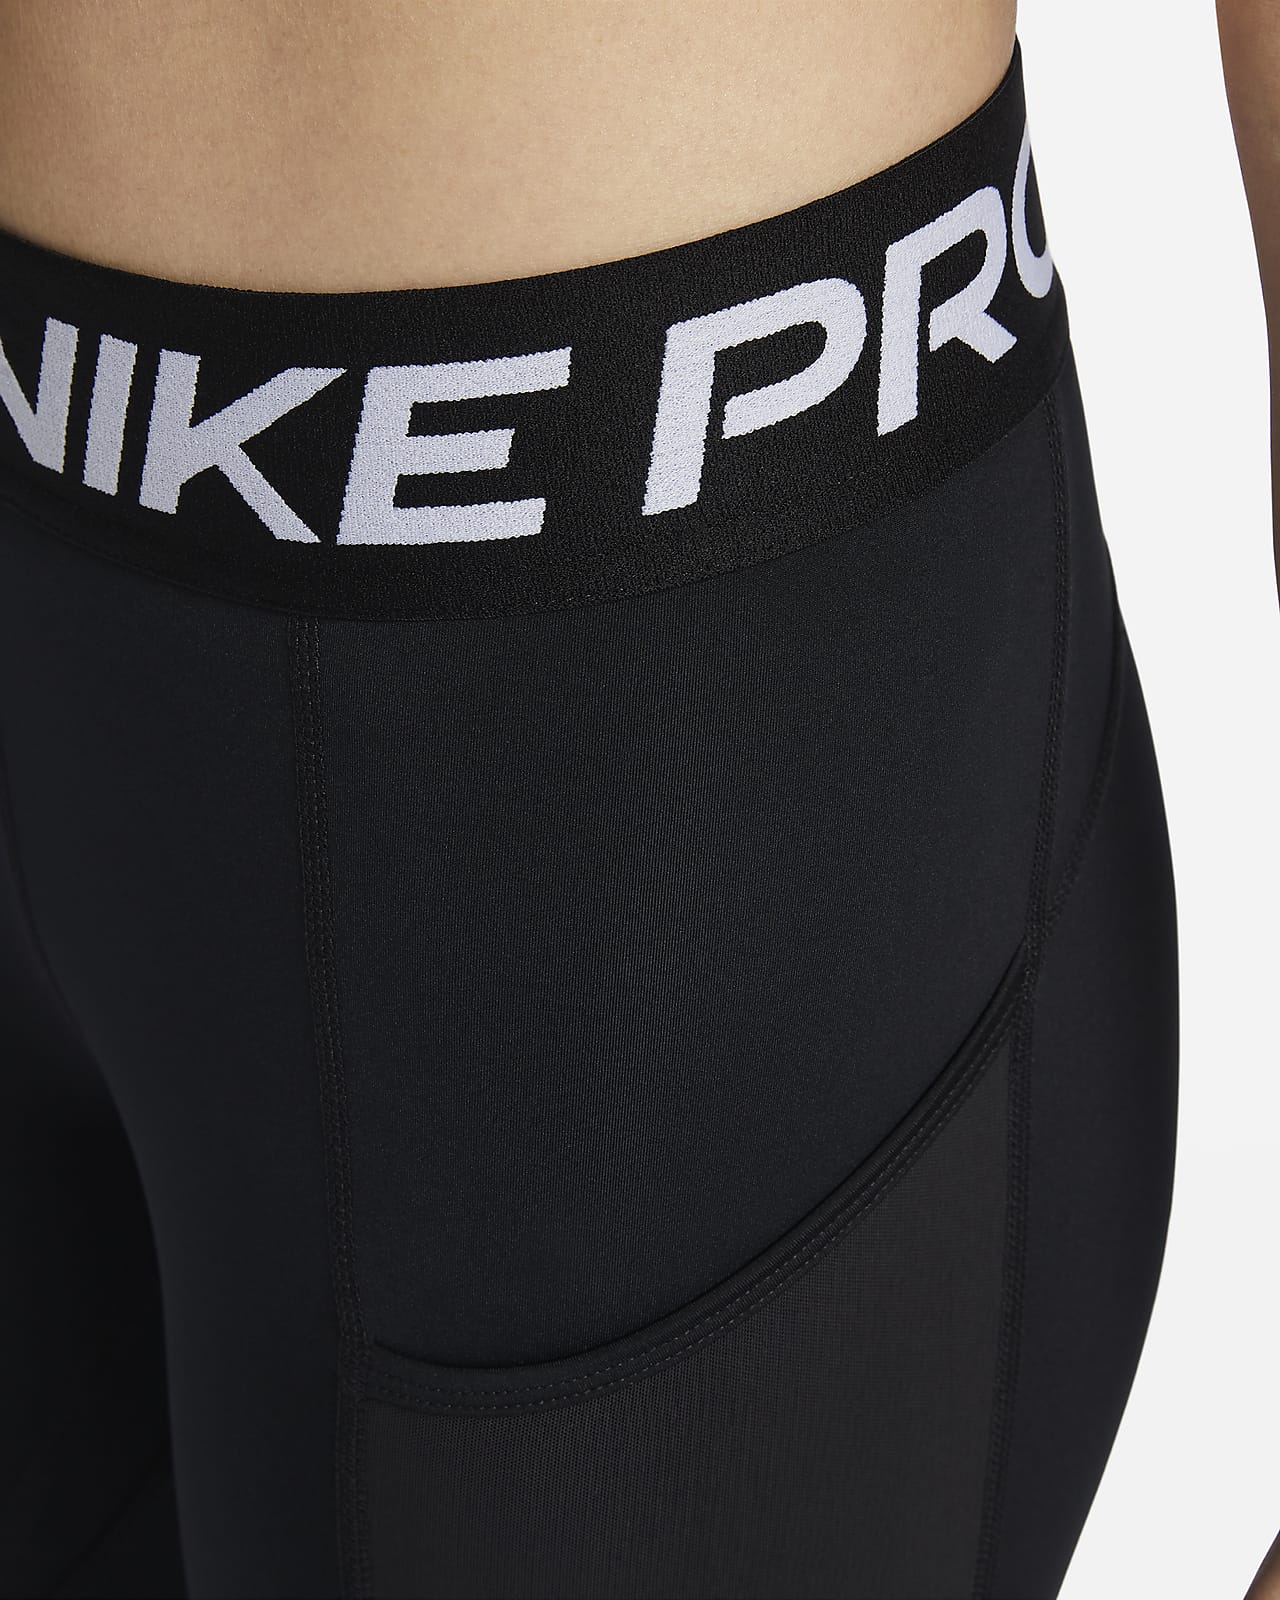 Nike Womens Nike Pro 365 Legging - Black